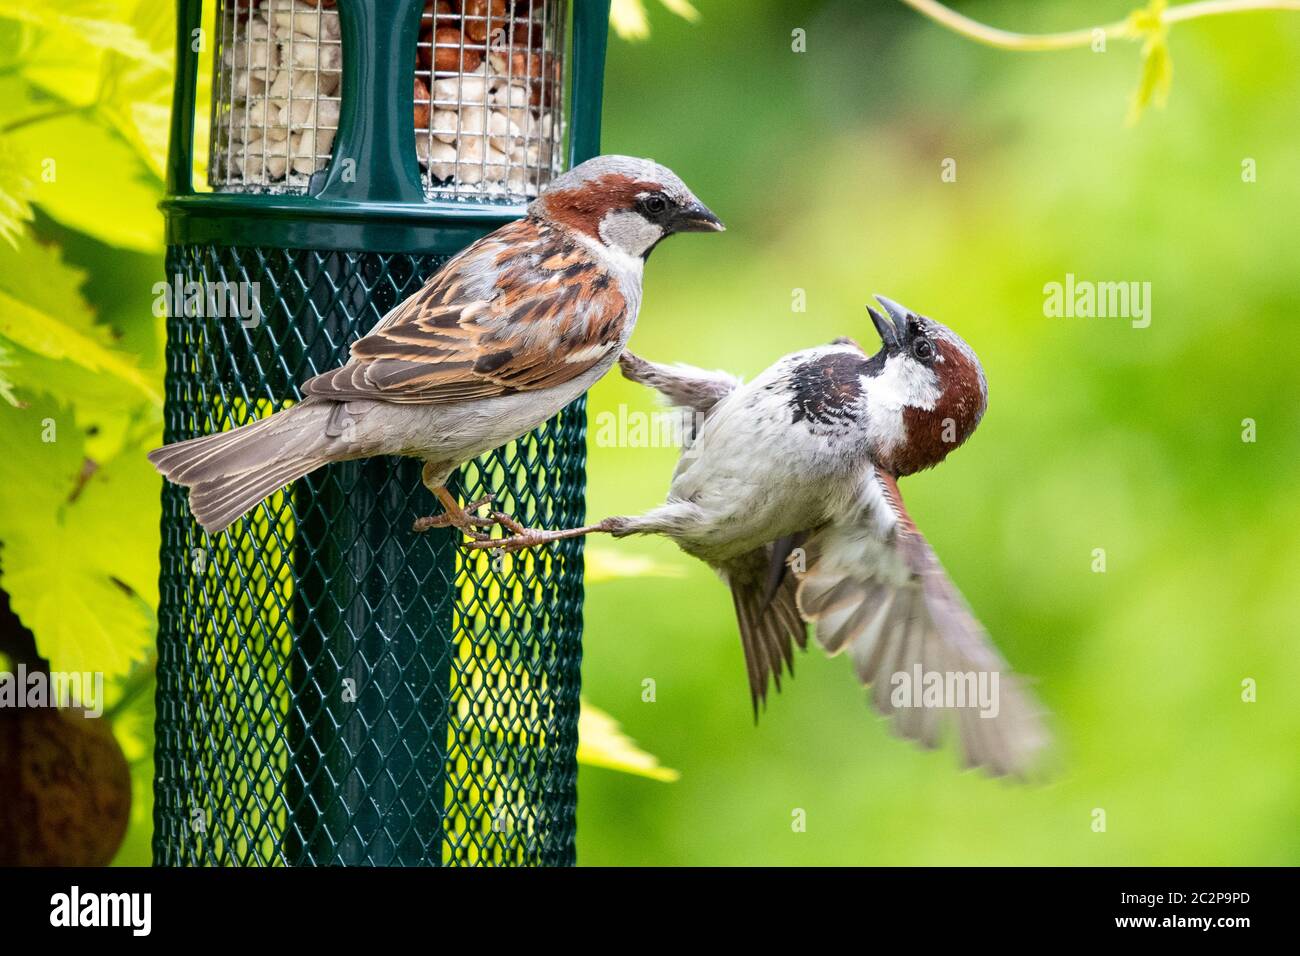 Des moineaux de maison mâles (Passer domesticus) se battant sur un mangeoire à oiseaux rempli de suet et d'arachides - Écosse, Royaume-Uni Banque D'Images